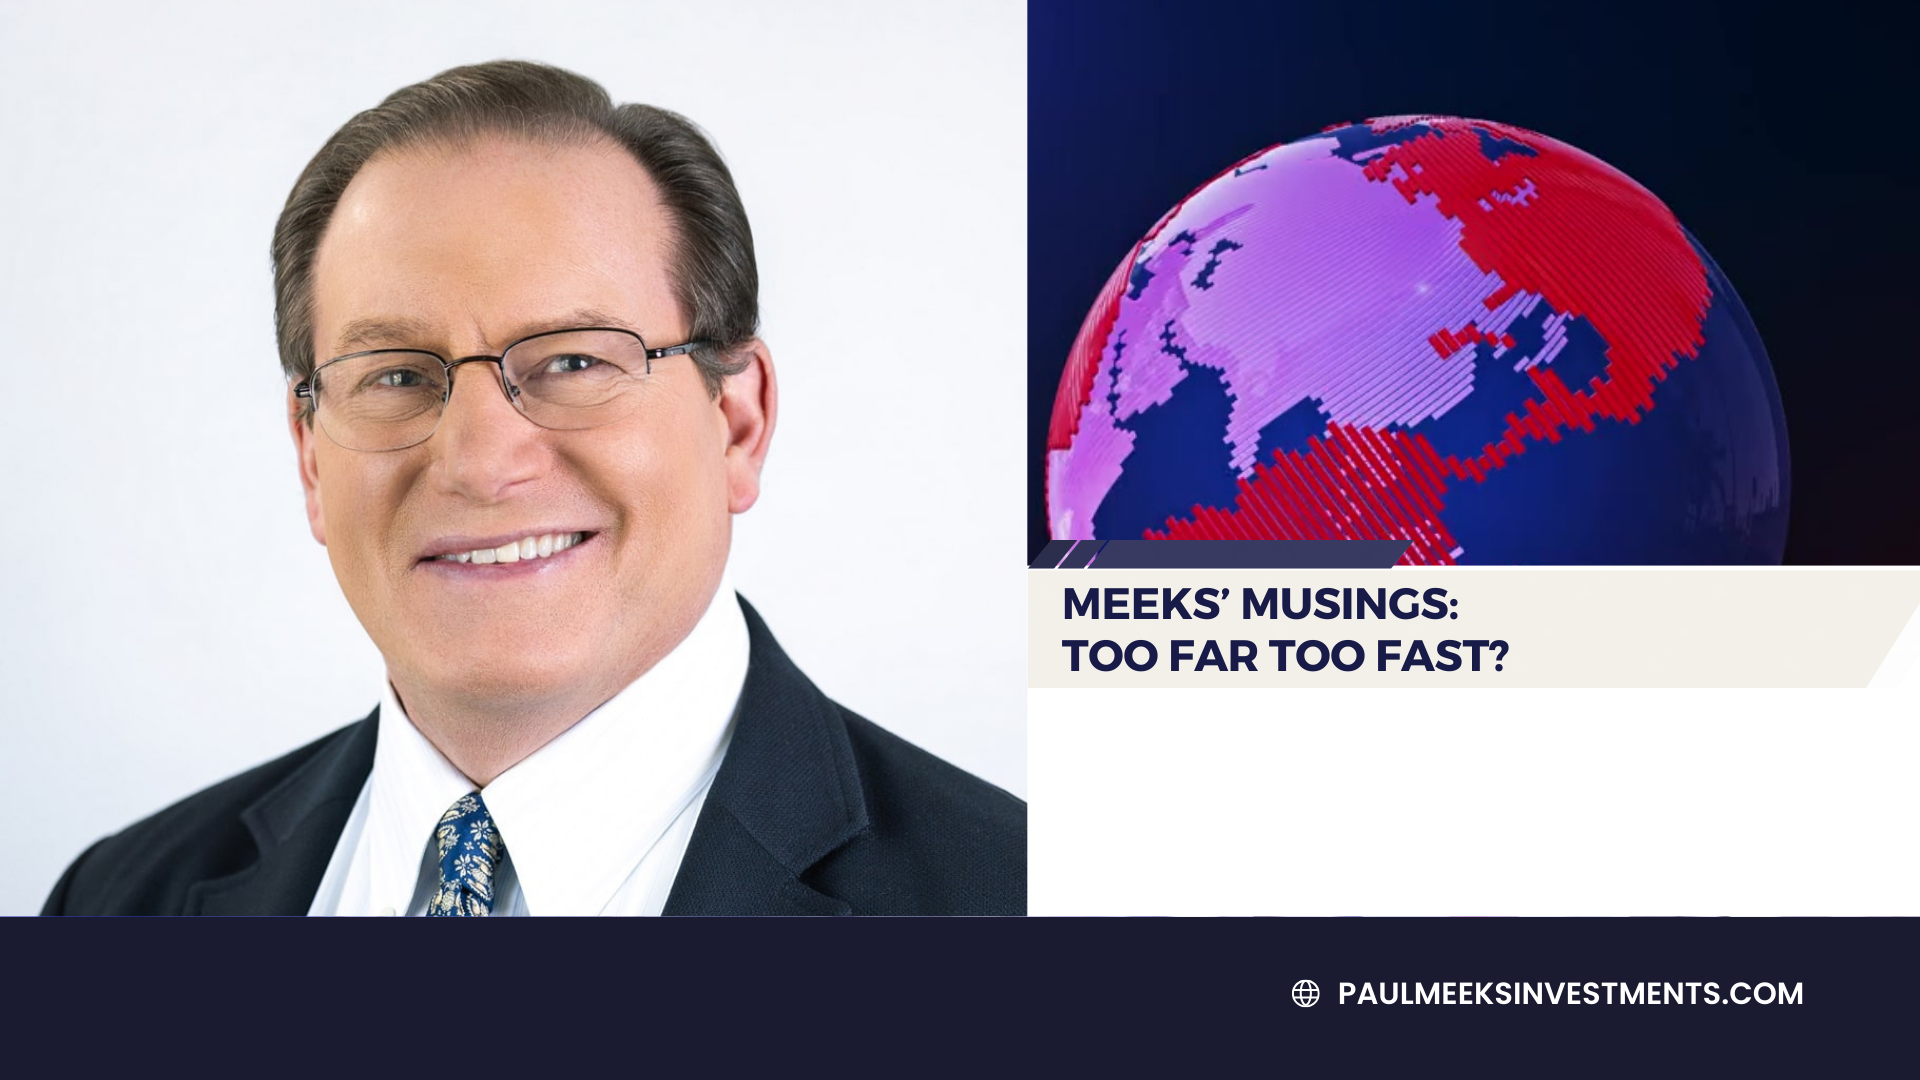 Meeks’ Musings: Too Far Too Fast?